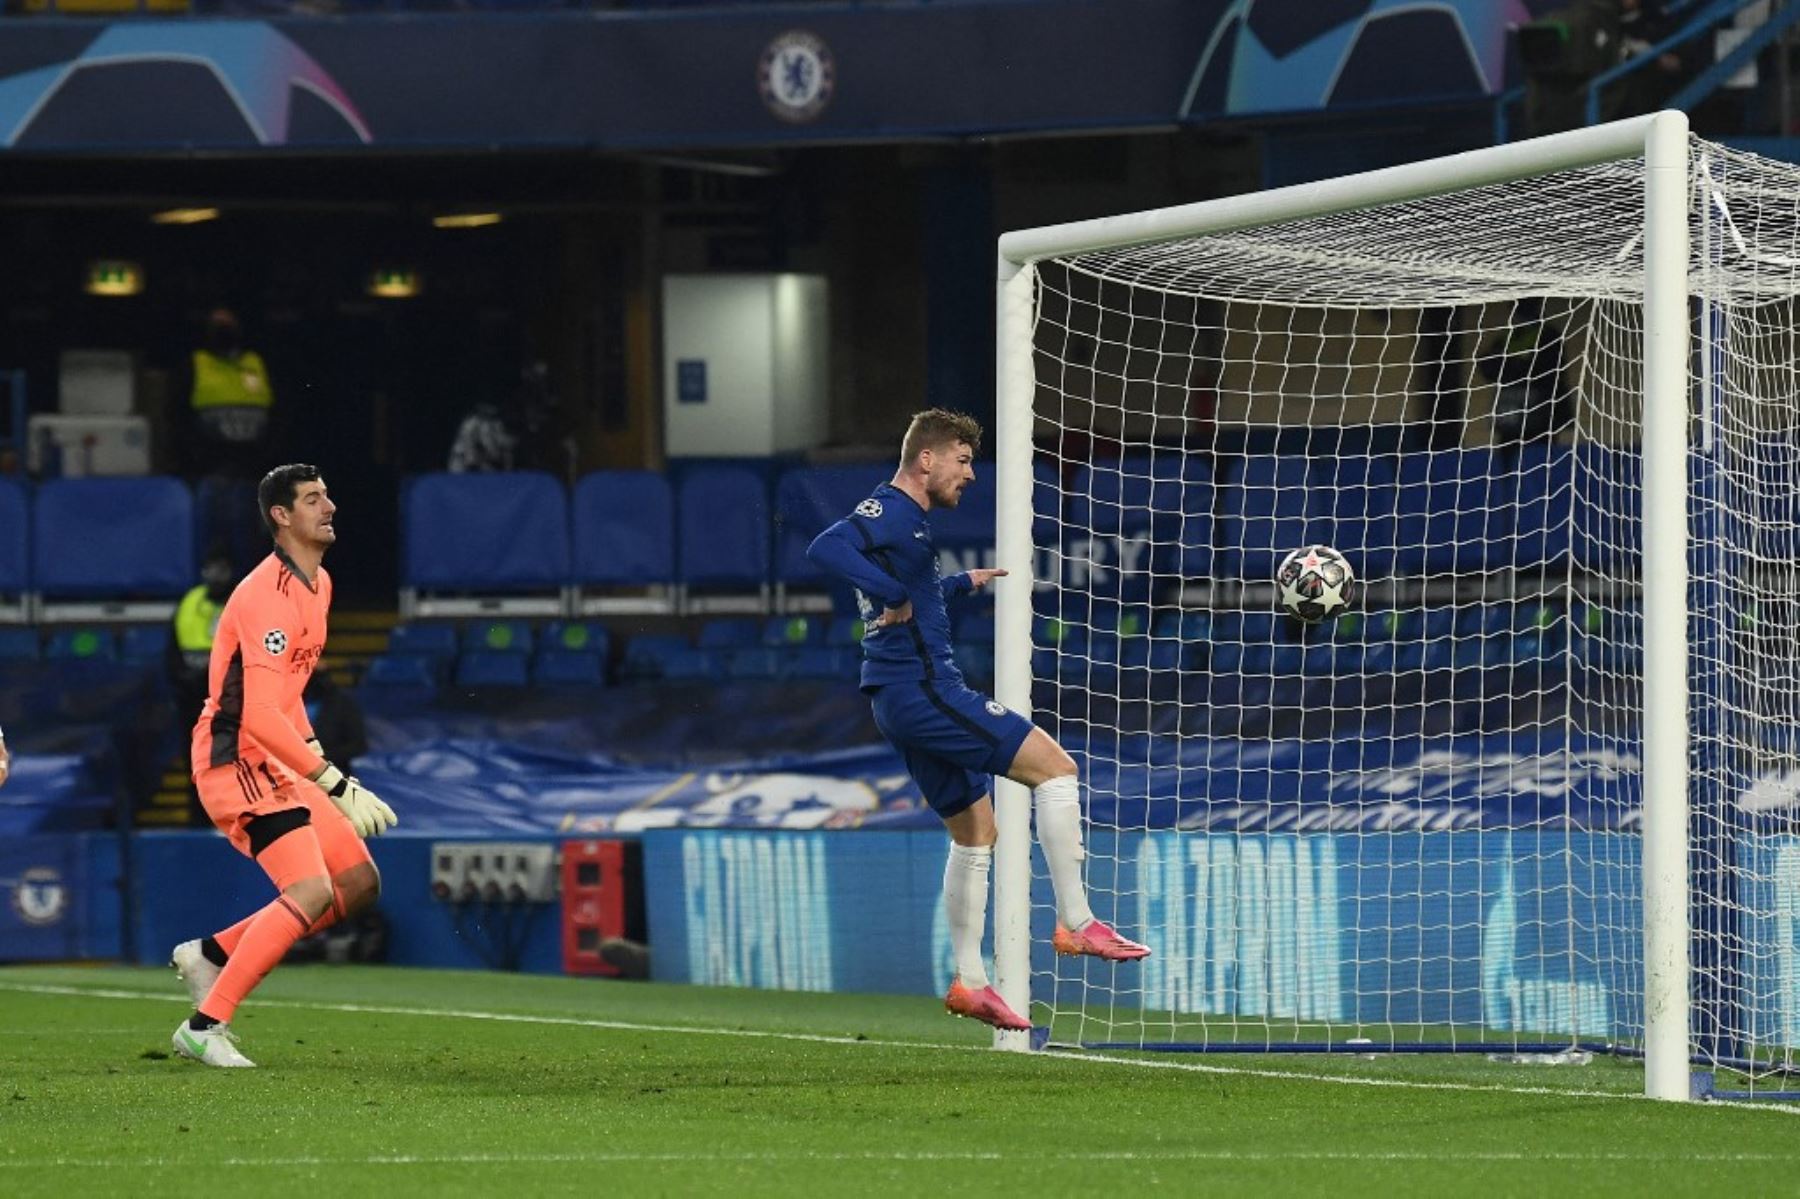 El delantero alemán del Chelsea, Timo Werner, cabecea un balón de rebote para marcar el primer gol durante el partido de vuelta de la semifinal de la Liga de Campeones de la UEFA entre el Chelsea y el Real Madrid en Stamford Bridge en Londres. Foto: AFP